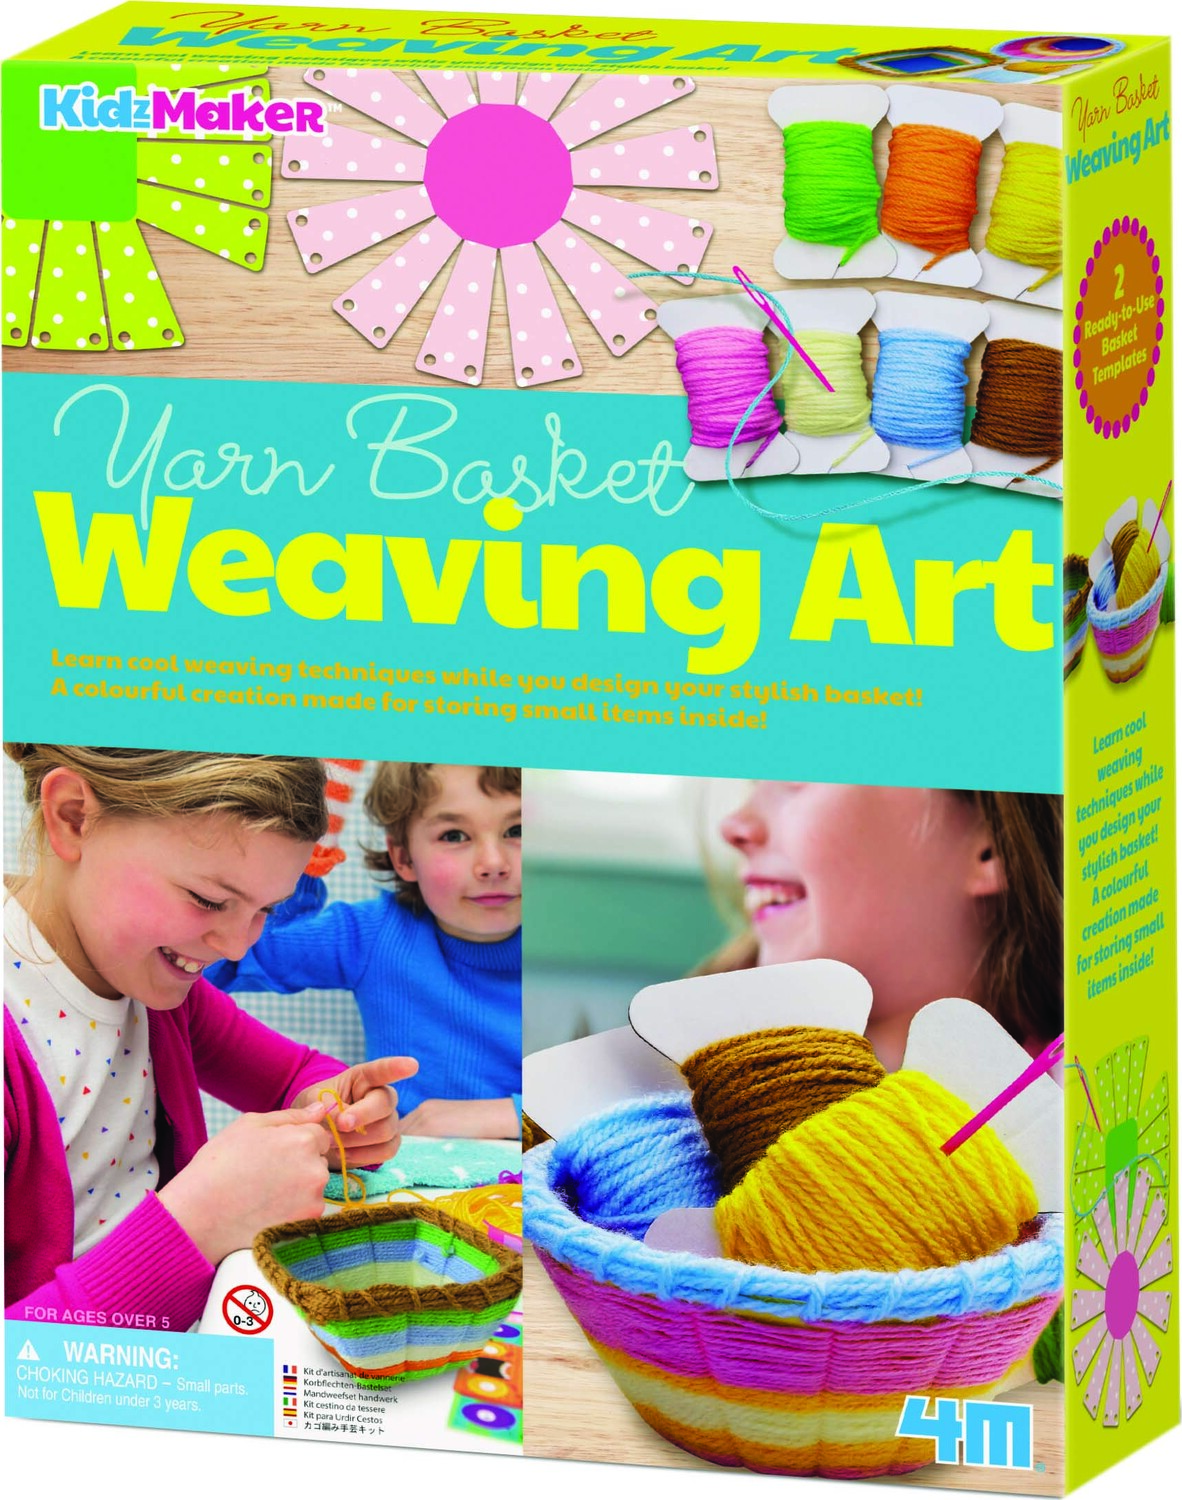 Yarn Basket Weaving Art - Mr. Mopps' Toy Shop